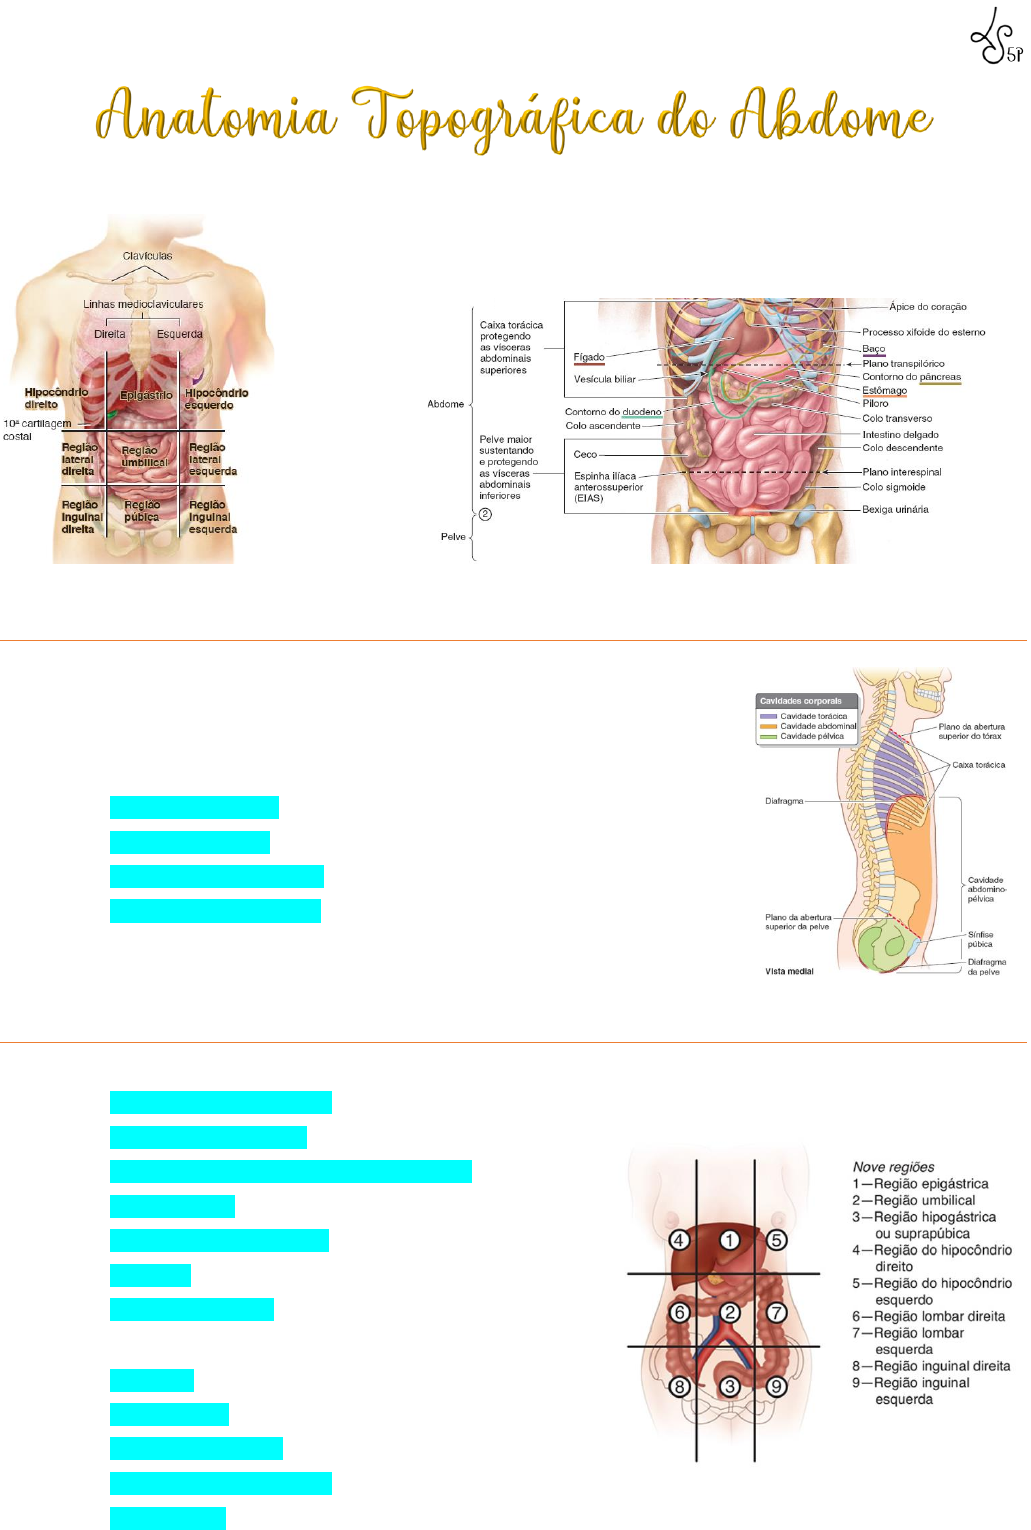 Abdome e pelve: Anatomia, localização e função